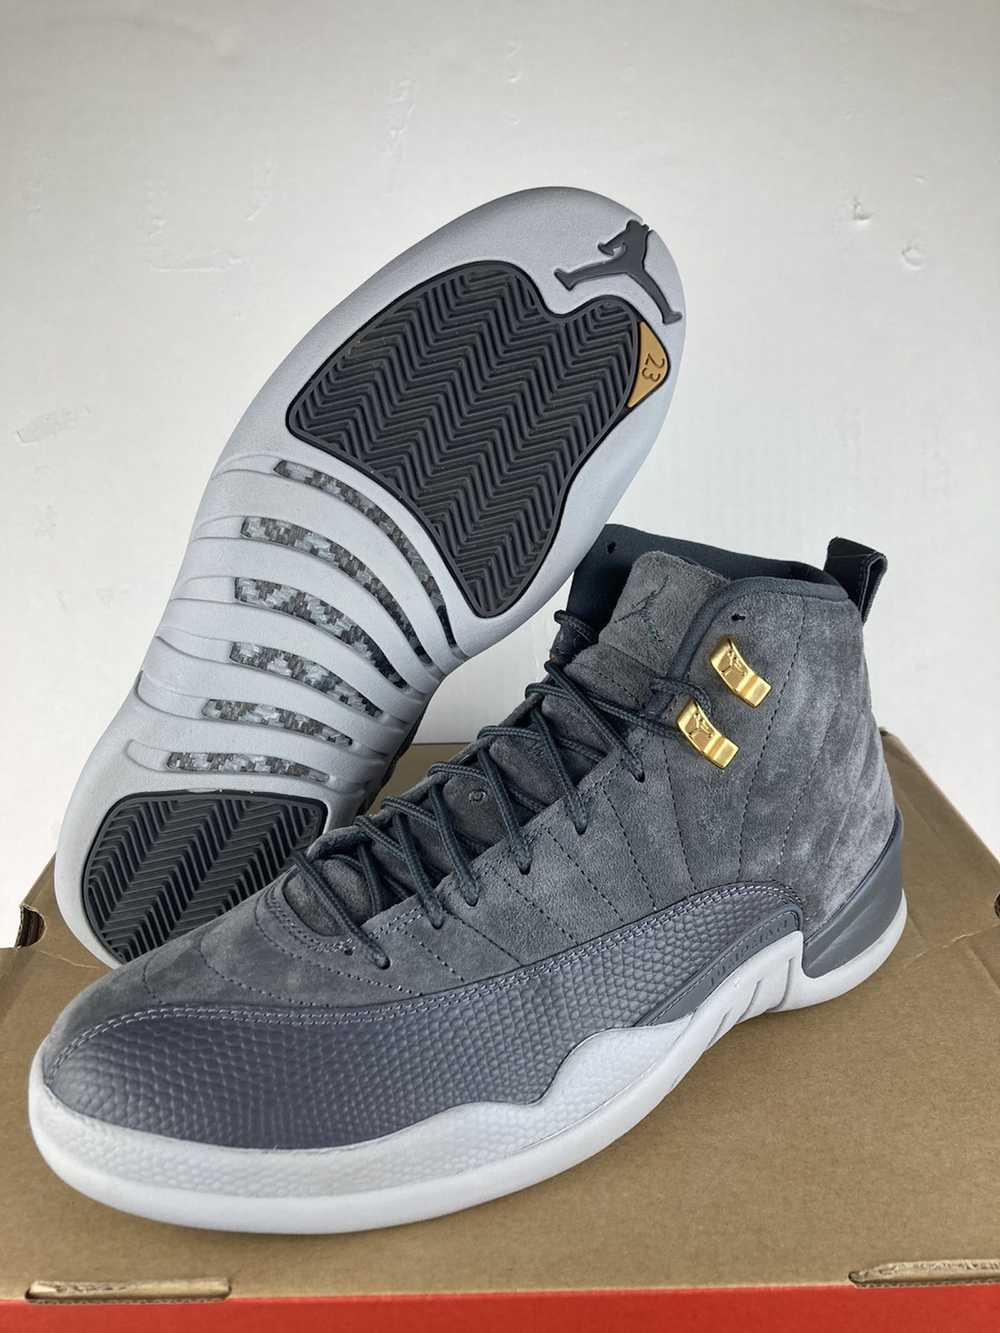 Jordan Brand × Nike Jordan 12 Dark Grey Size 10.5 - image 1